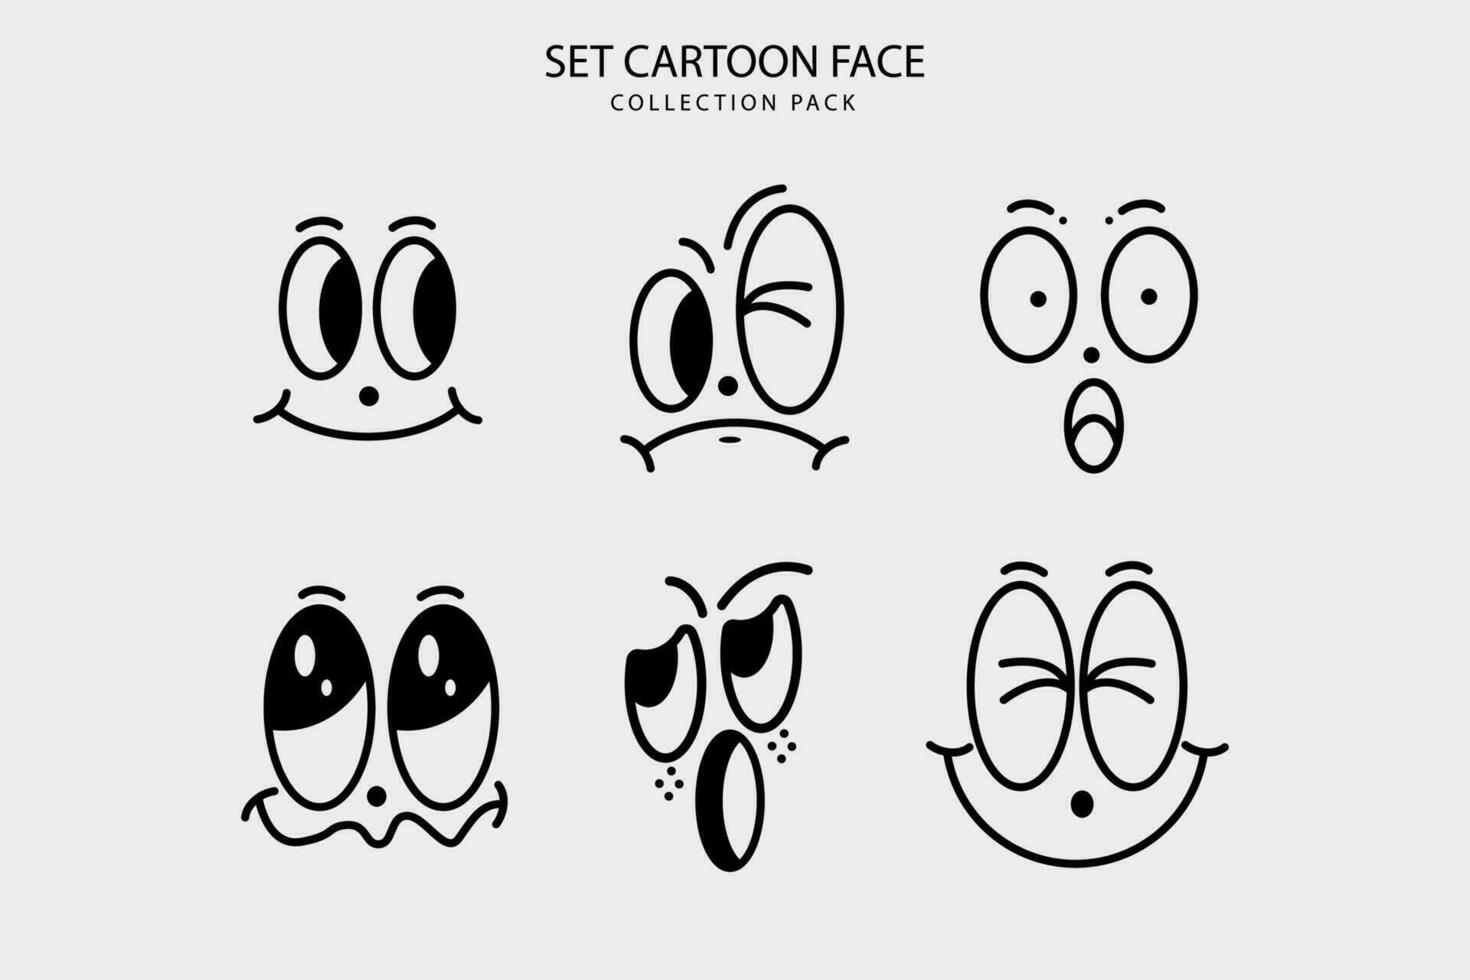 Set Cartoon face expresion graphic design vector